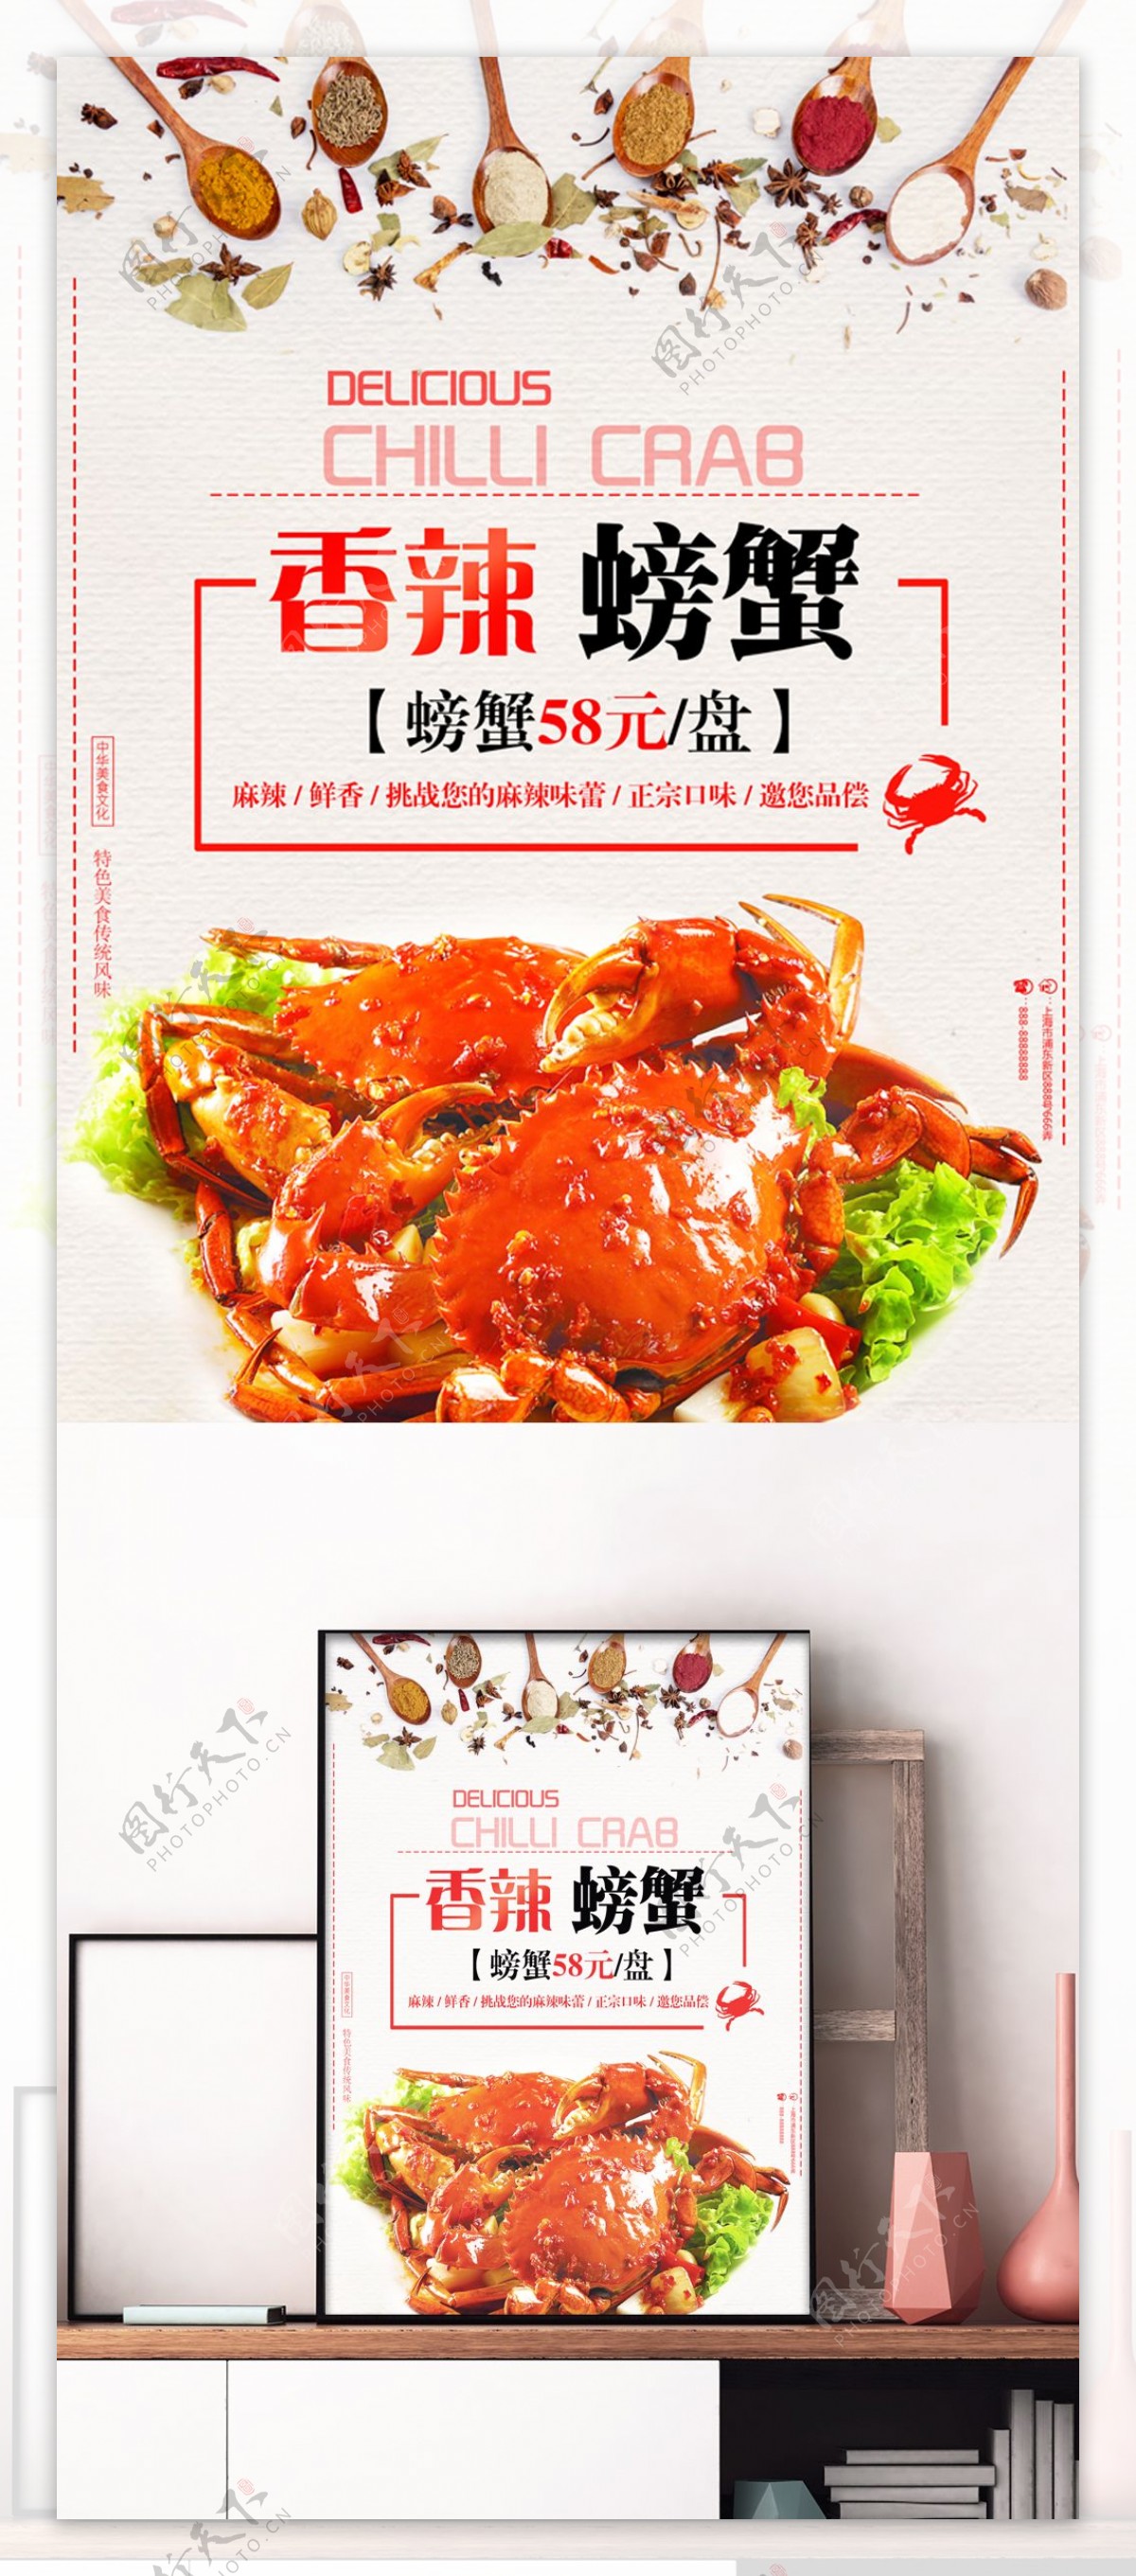 红色大气美食川菜馆海鲜香辣螃蟹促销海报